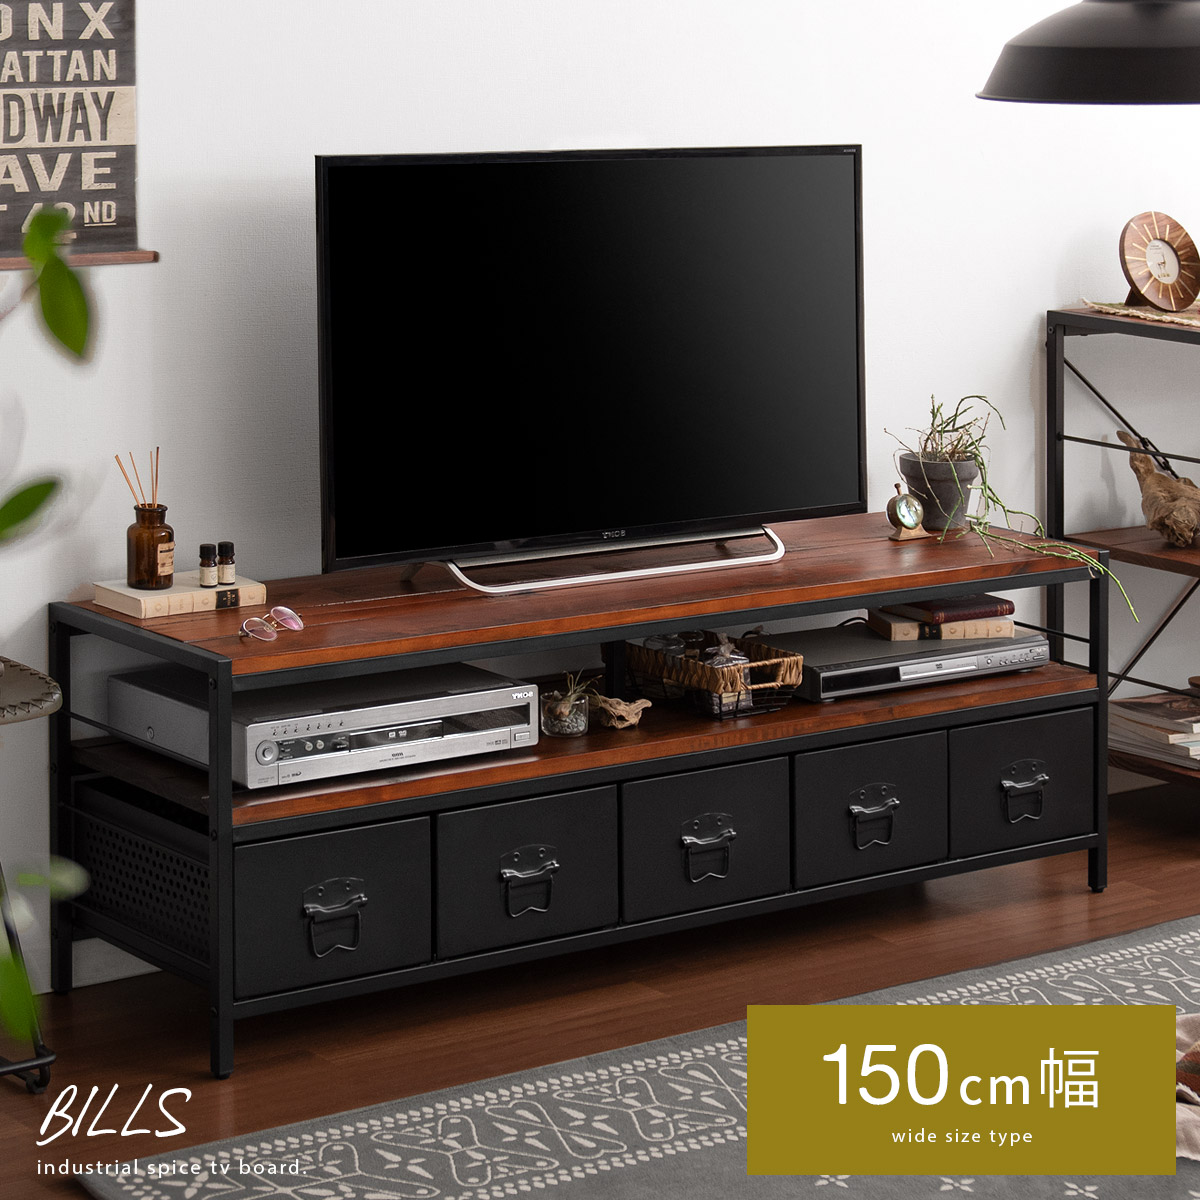 ヴィンテージウッド テレビボード BILLS(ビルズ) 150cm幅タイプ 【公式】 エア・リゾーム インテリア・家具通販